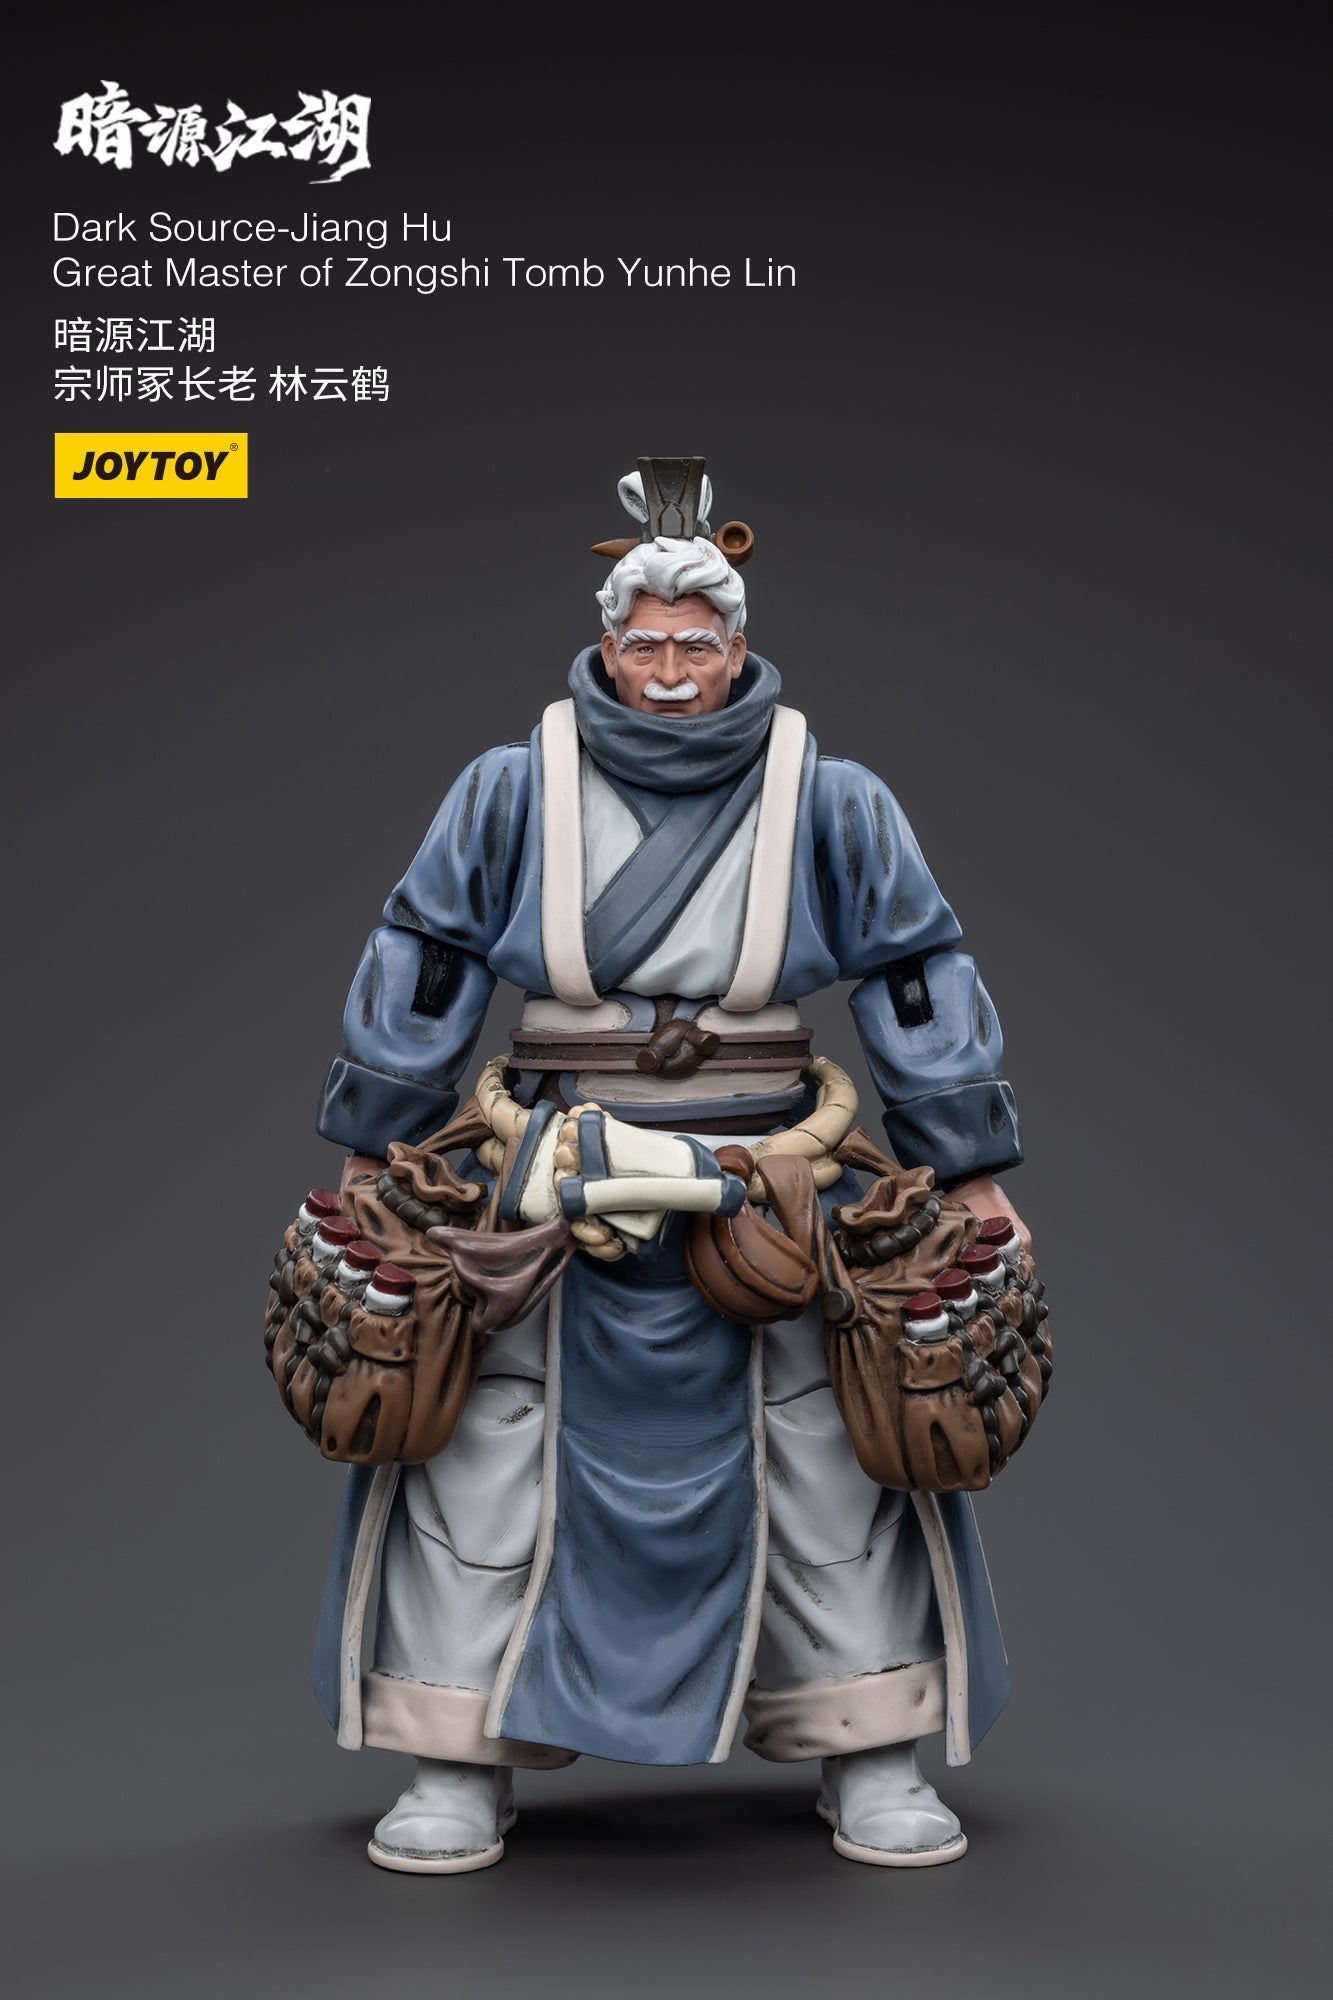 Dark Source-Jiang Hu Great Master of Zongshi Tomb Yunhe Lin - Action Figure By JOYTOY